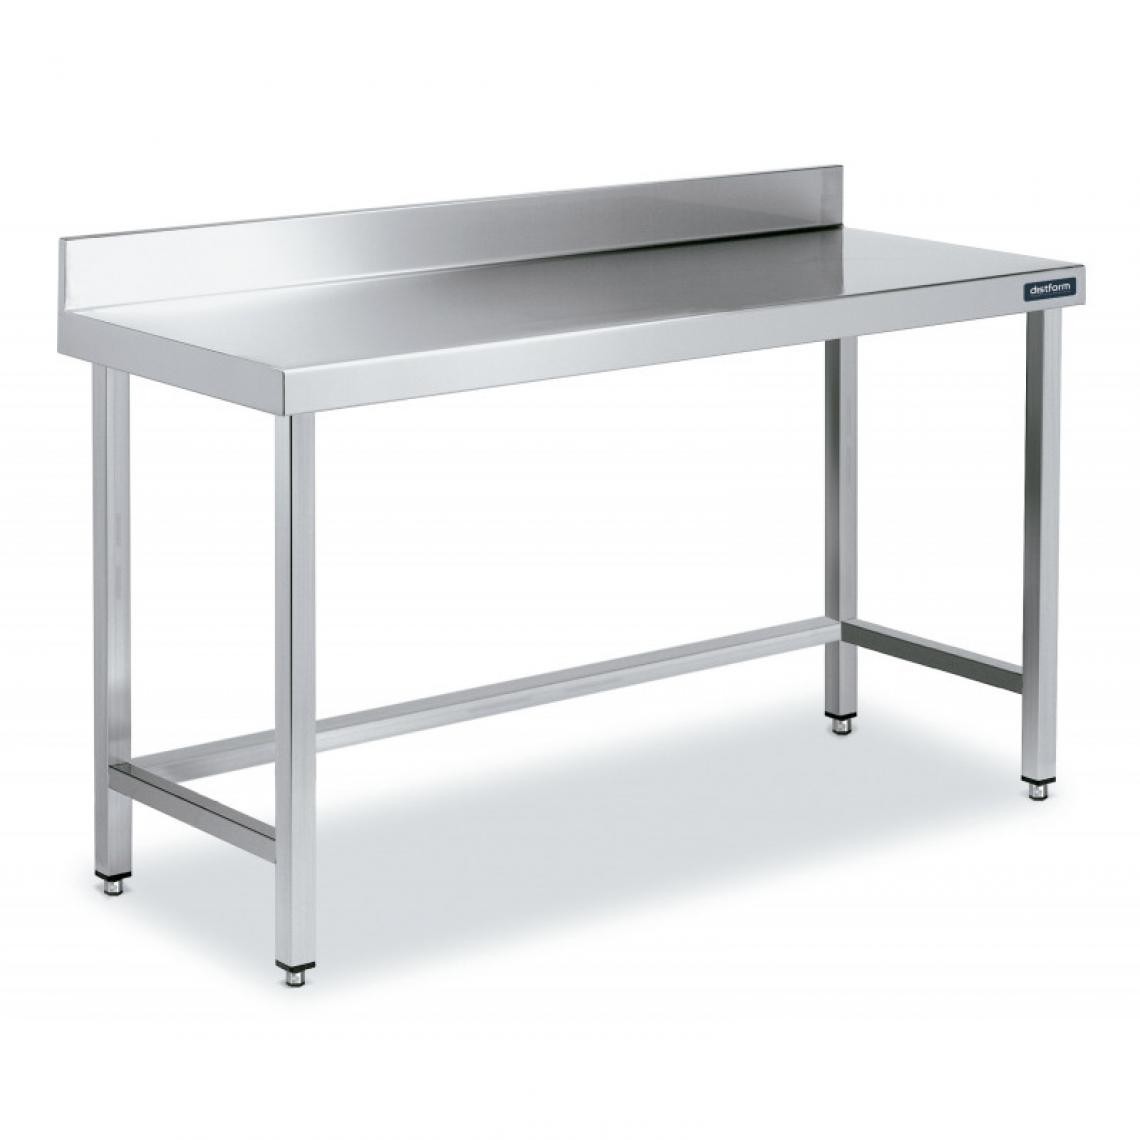 DISTFORM - Table Adossée en Inox avec Renforts Profondeur 550 mm - Distform - Acier inoxydable800x550 - Tables à manger